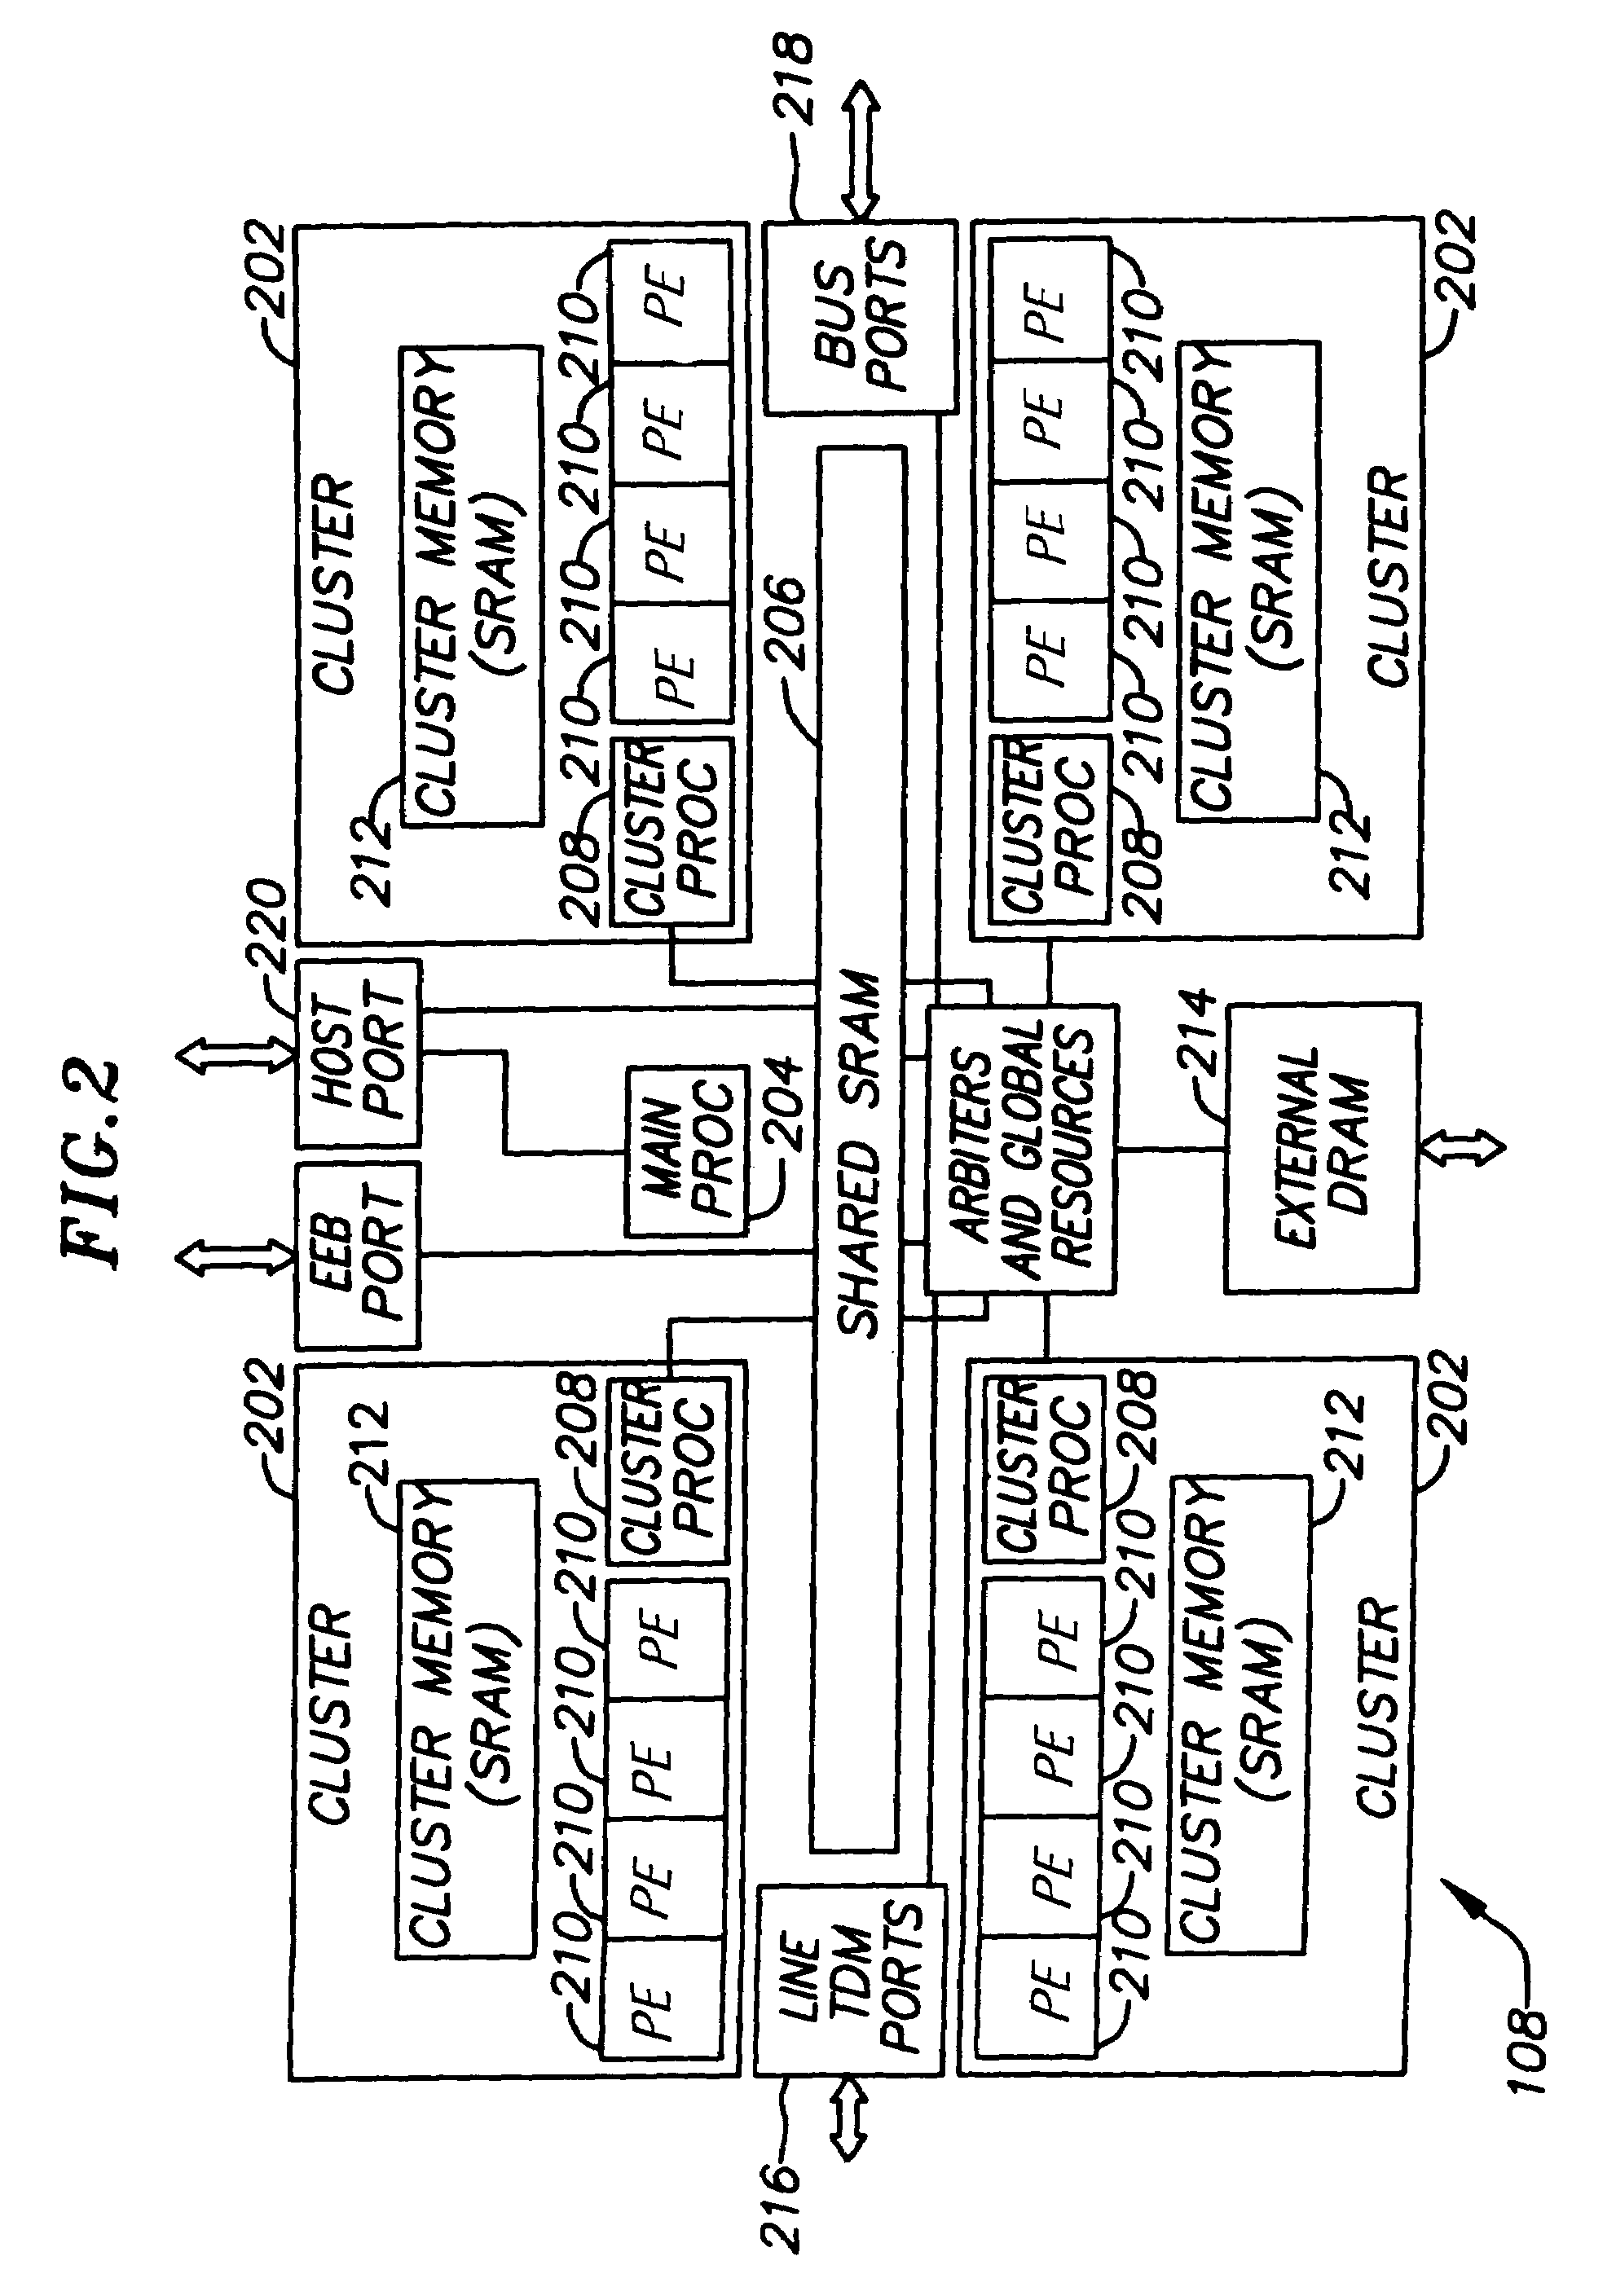 Multi-channel, multi-service debug on a pipelined CPU architecture